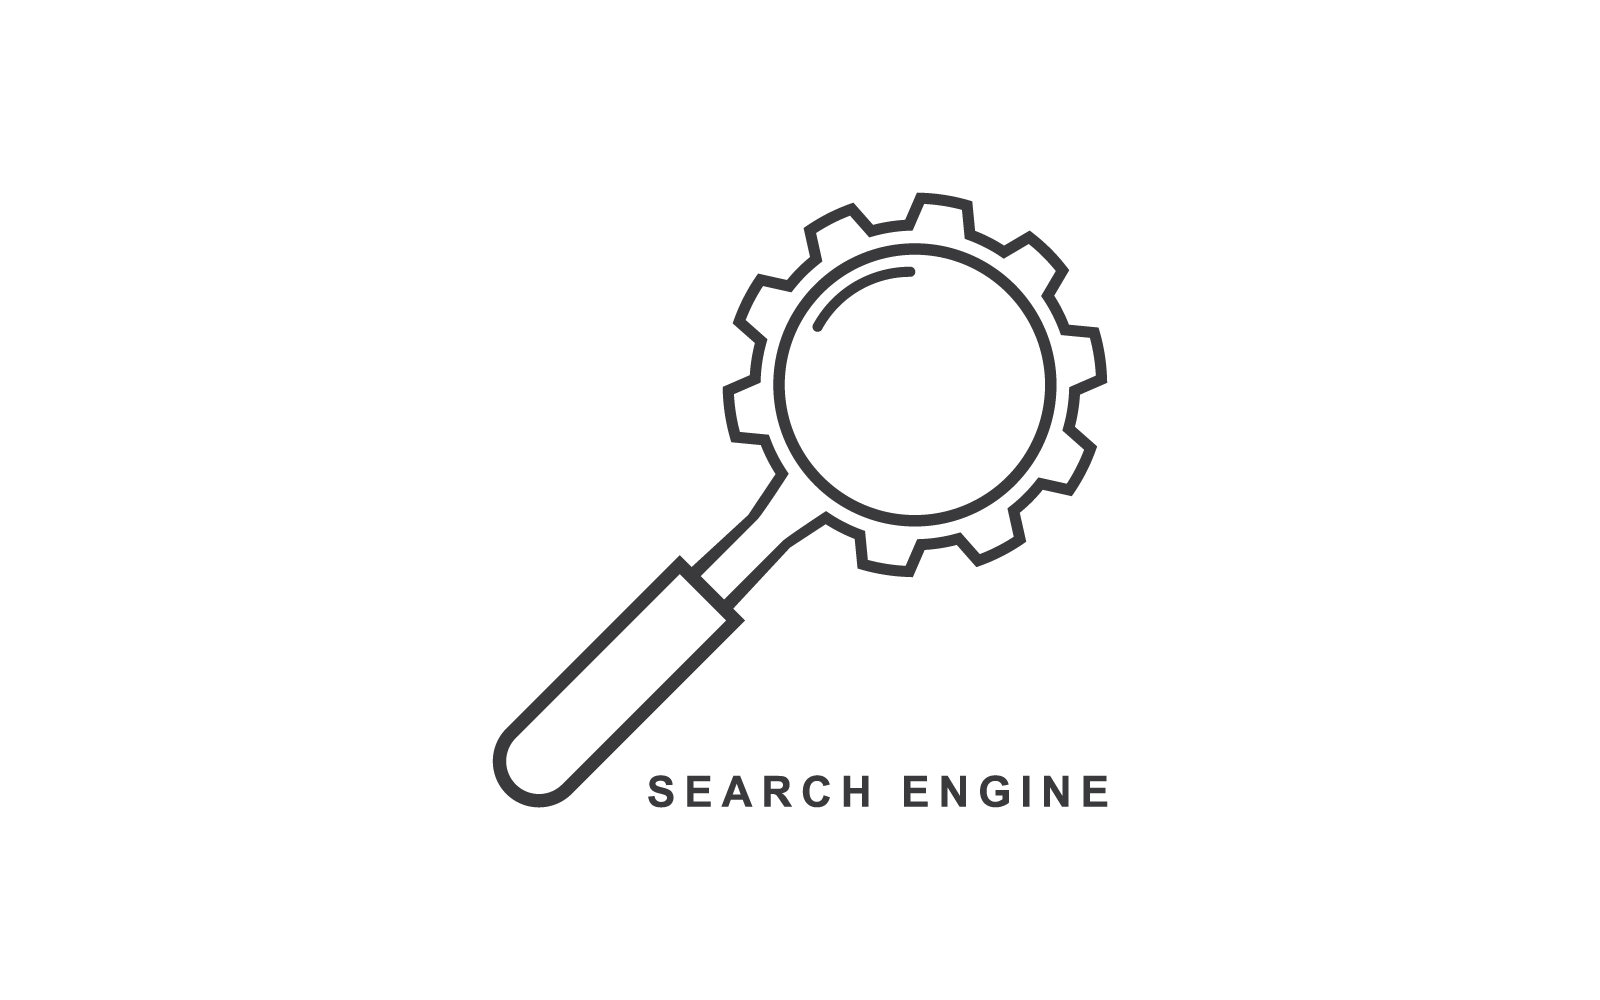 Diseño plano del vector del logotipo de la ilustración del motor de búsqueda